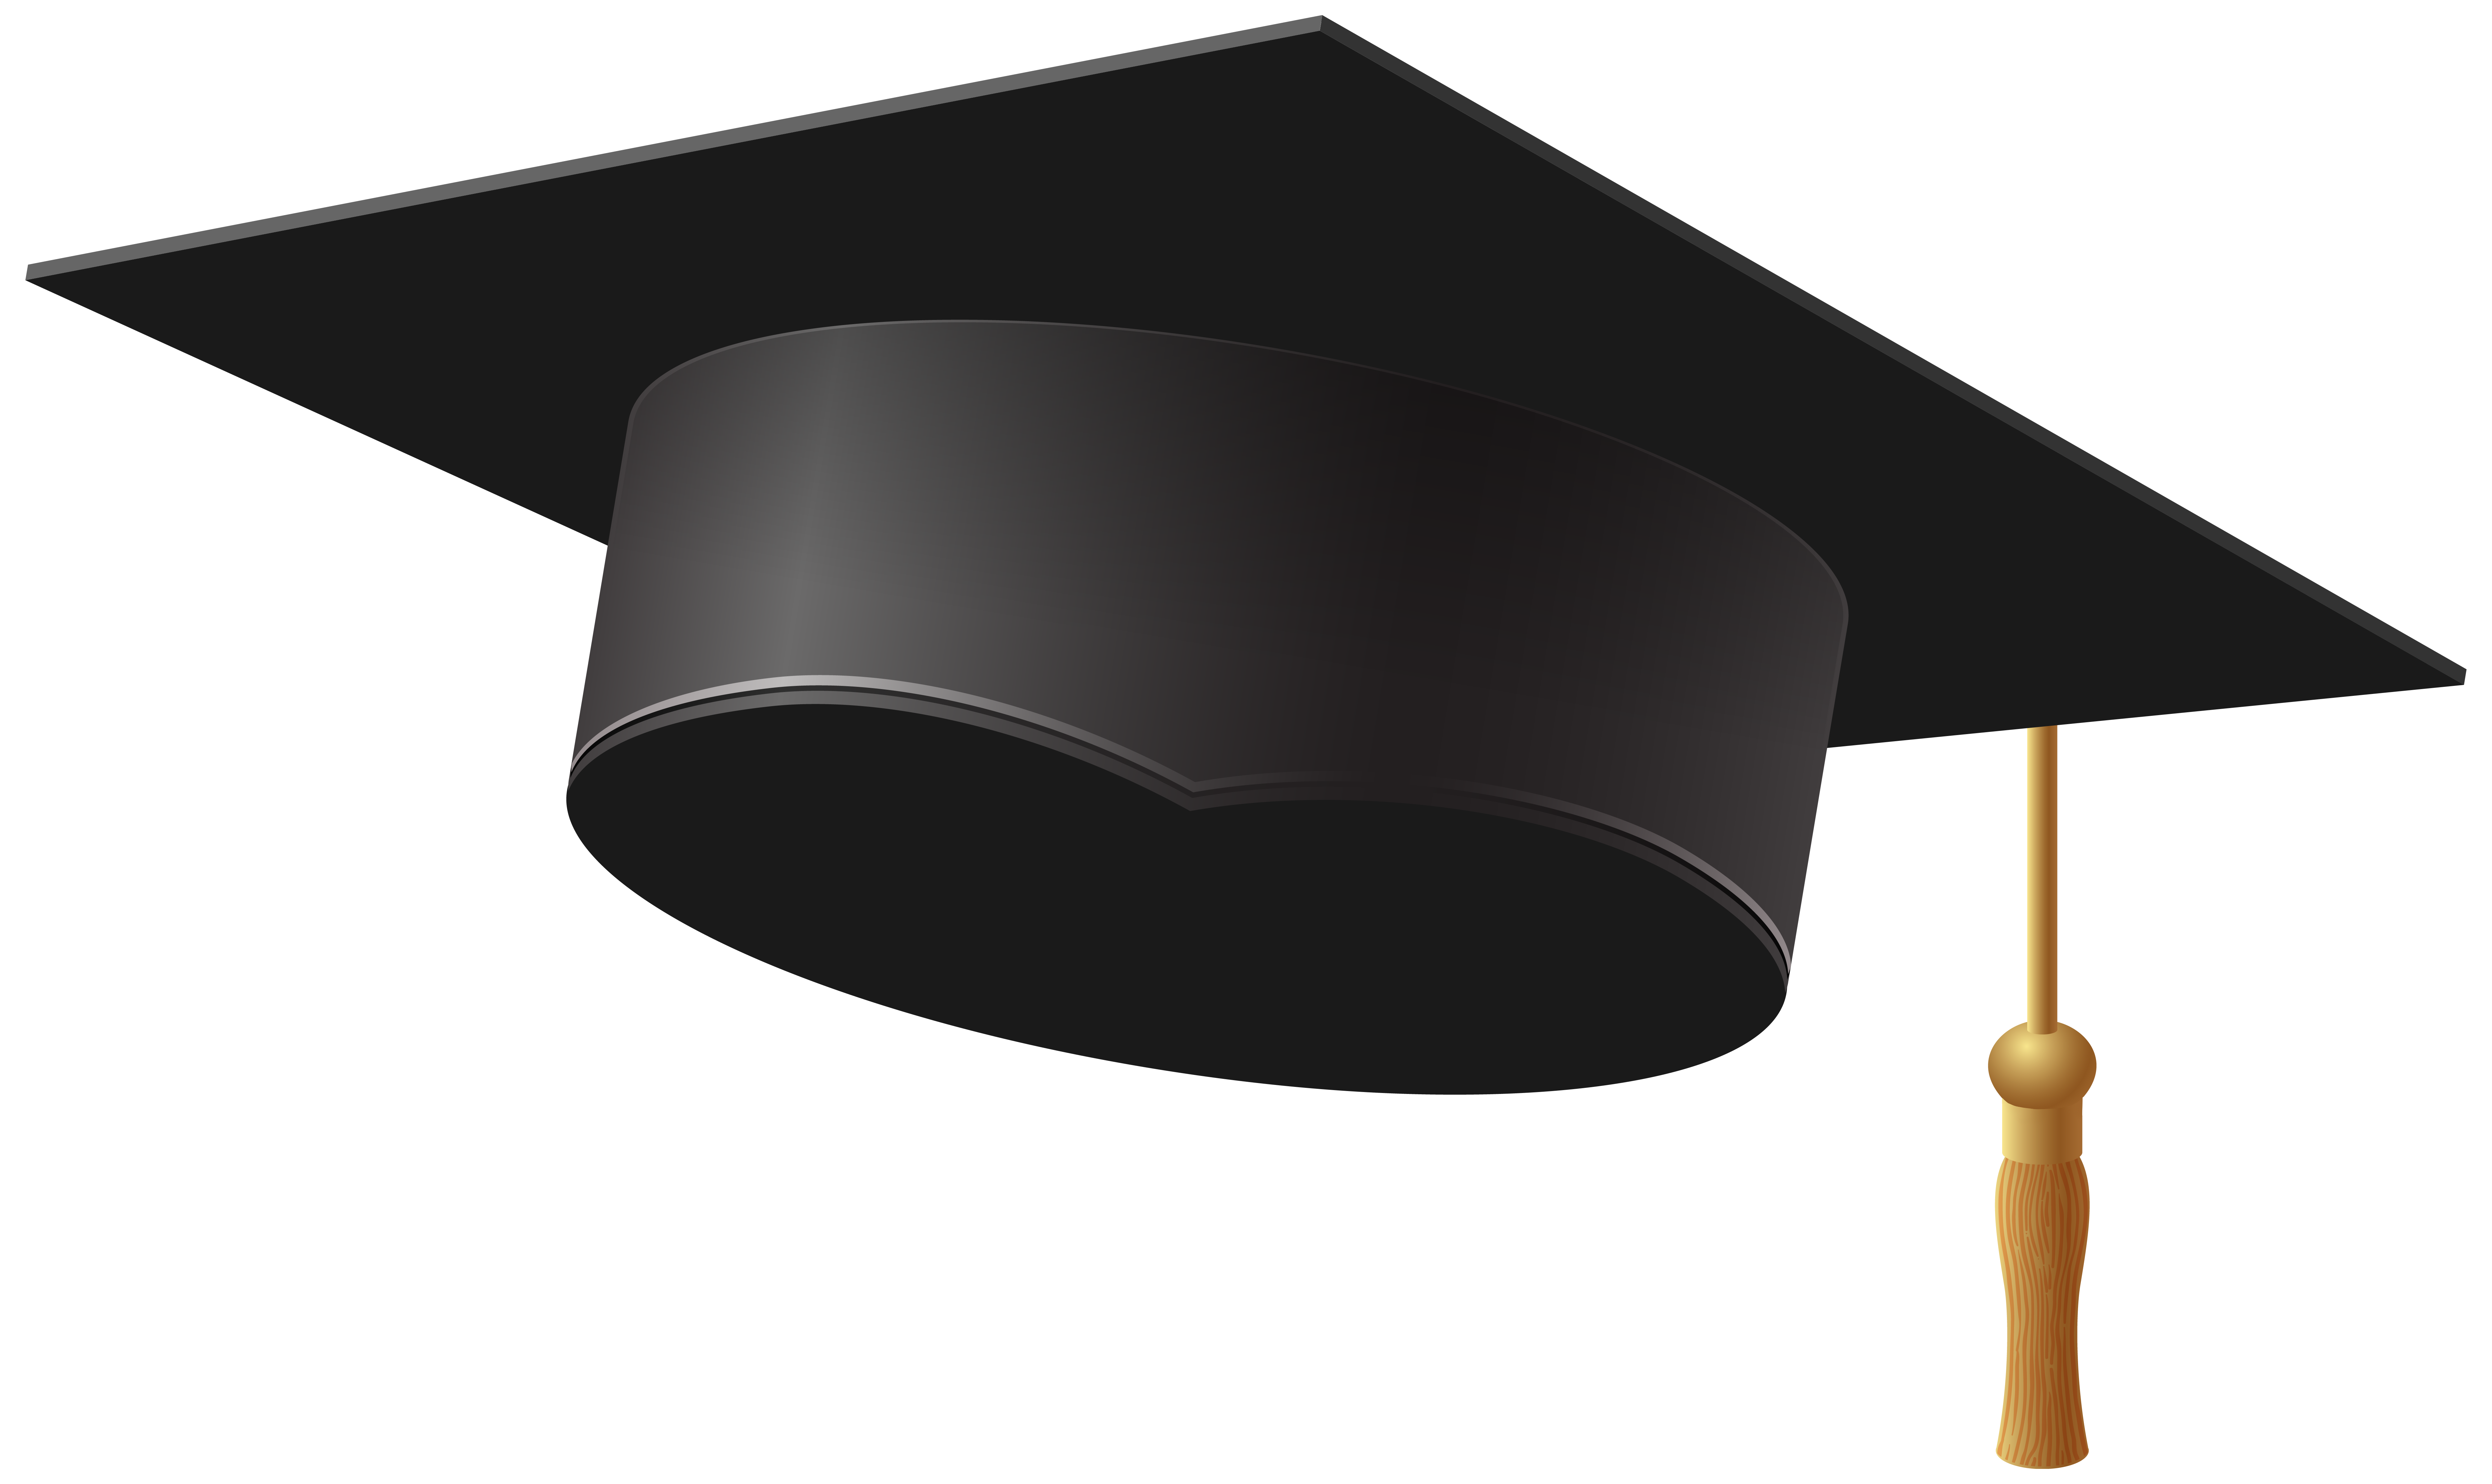 Free Graduation Cap Transparent, Download Free Graduation Cap ...